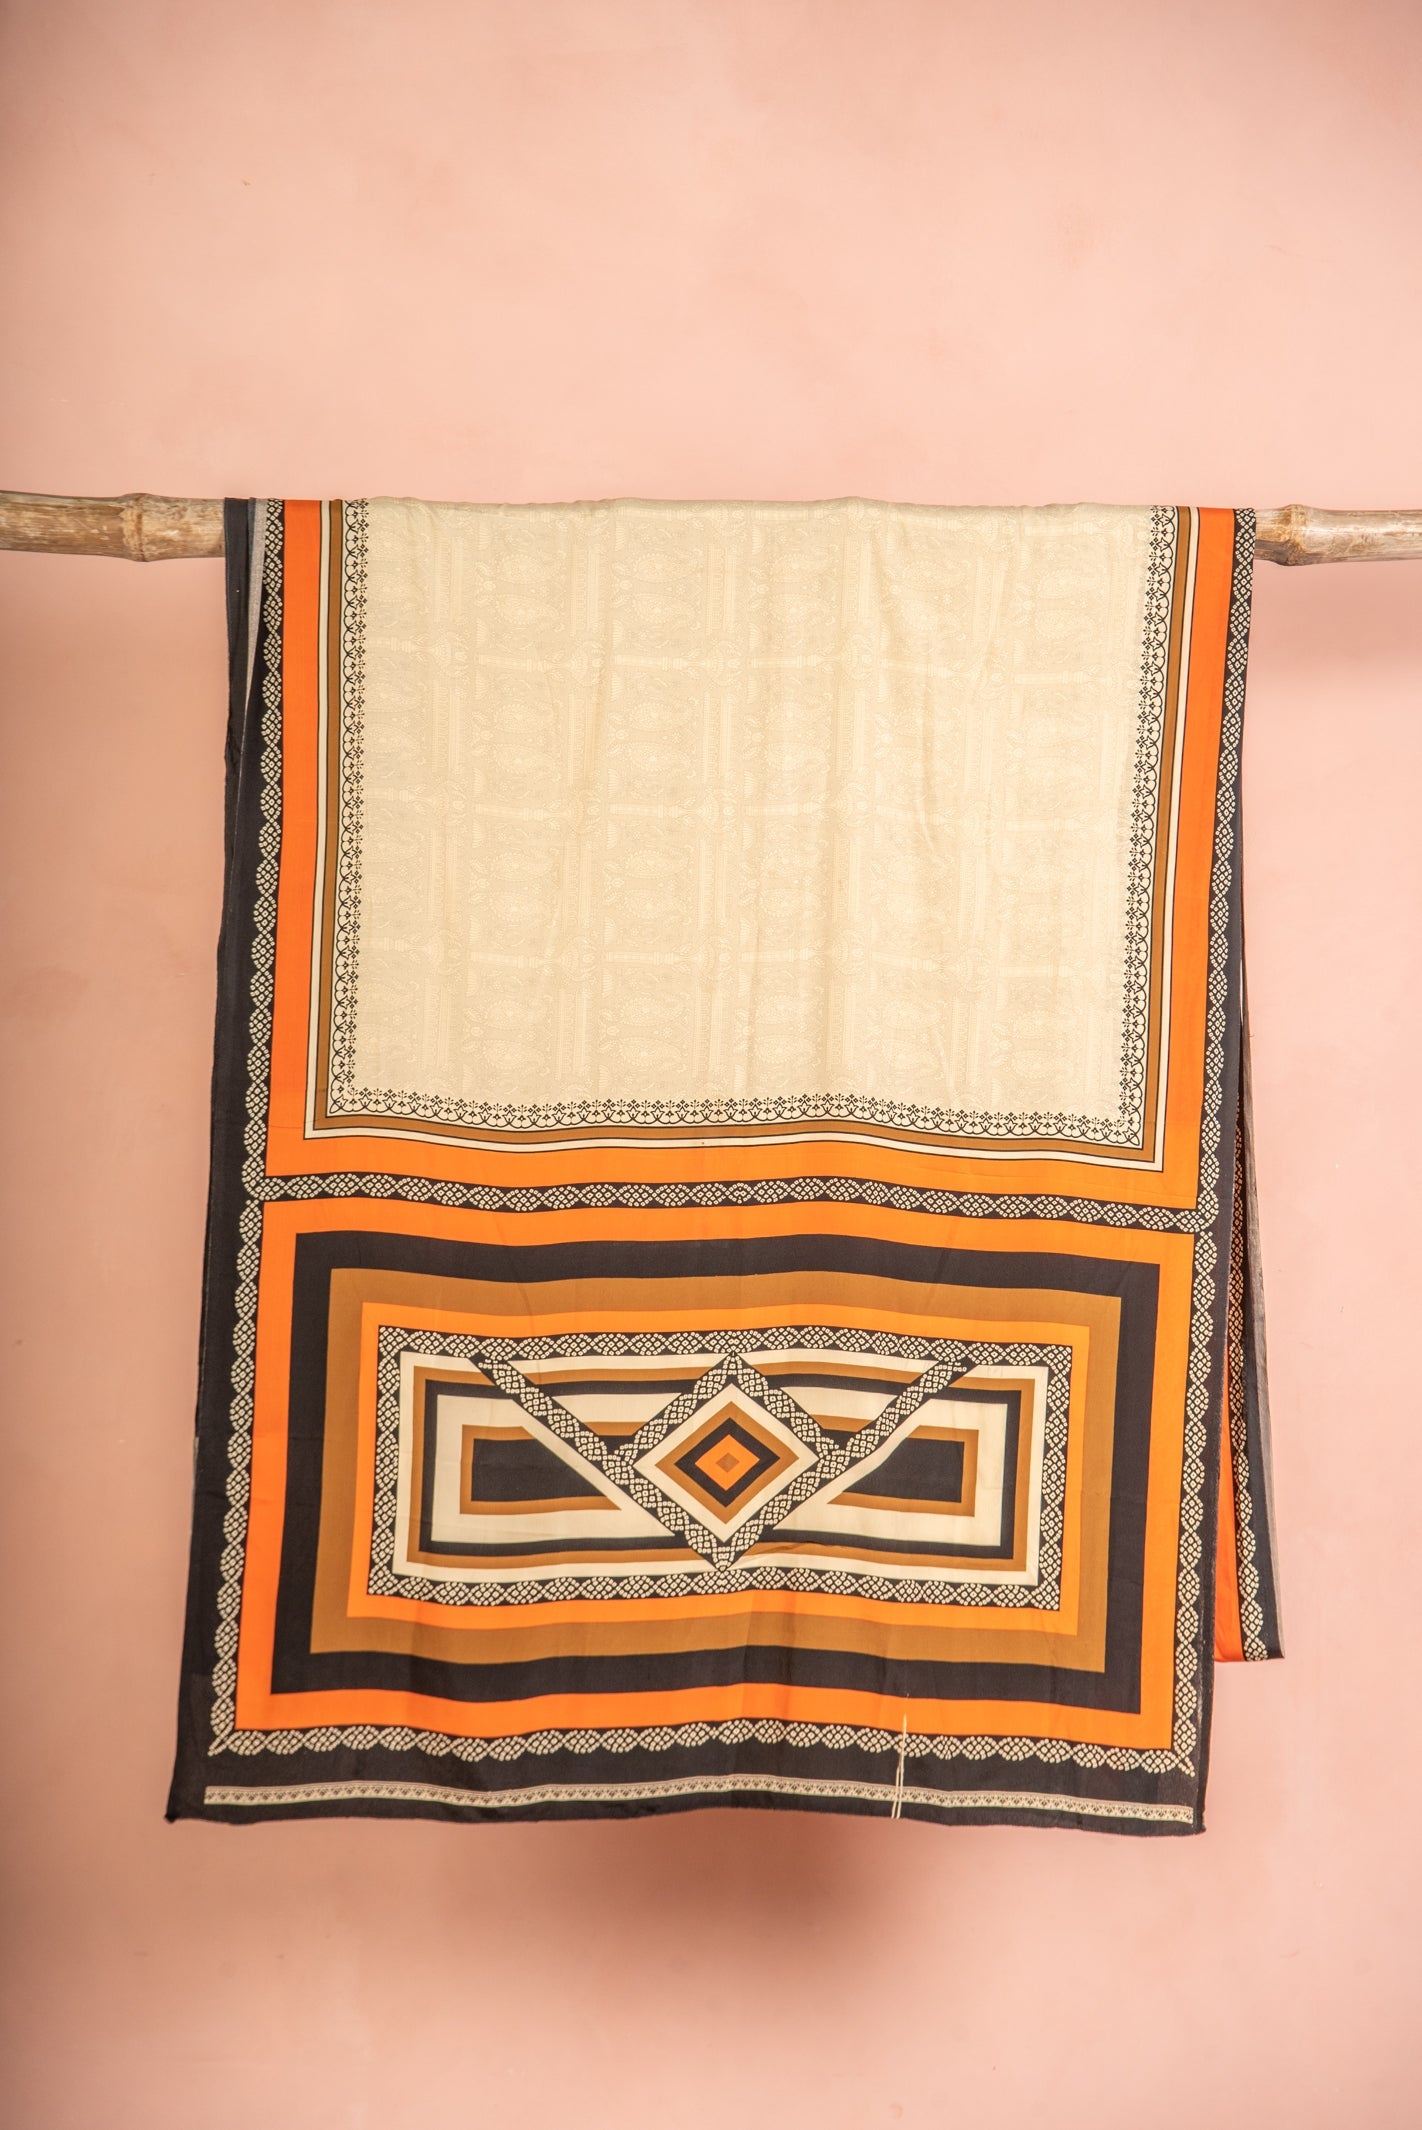 Vintage Rayon Sari - 5 Metres Long - 2436